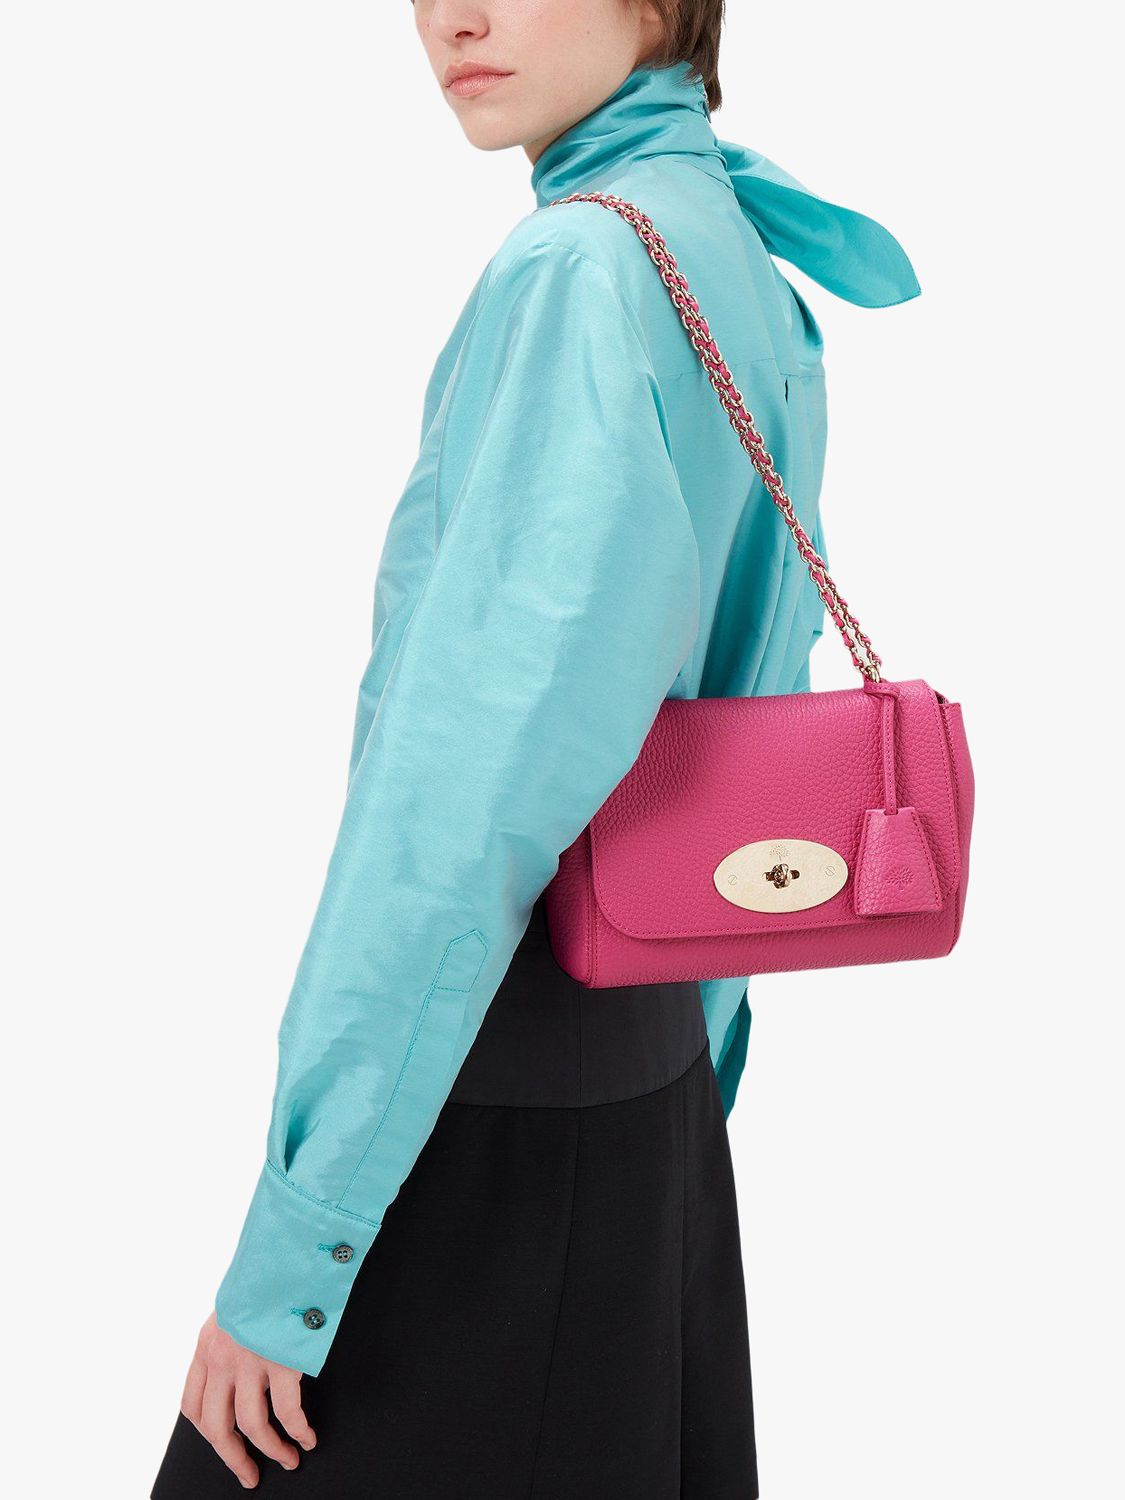 Mulberry Lily foldover shoulder bag, Pink